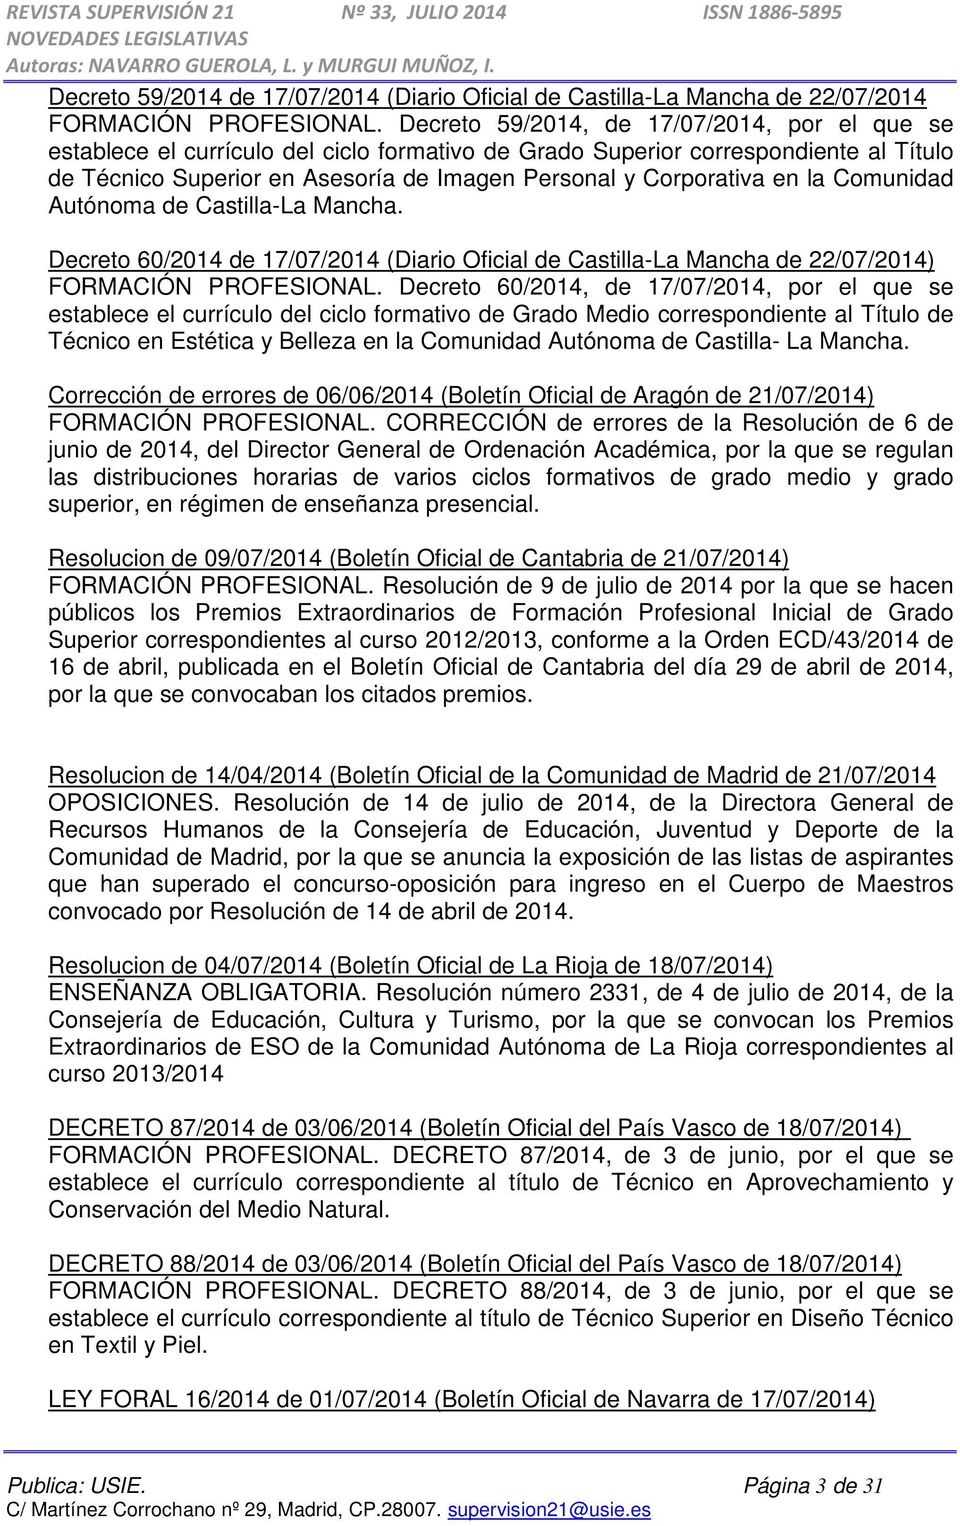 en la Comunidad Autónoma de Castilla-La Mancha. Decreto 60/2014 de 17/07/2014 (Diario Oficial de Castilla-La Mancha de 22/07/2014) FORMACIÓN PROFESIONAL.